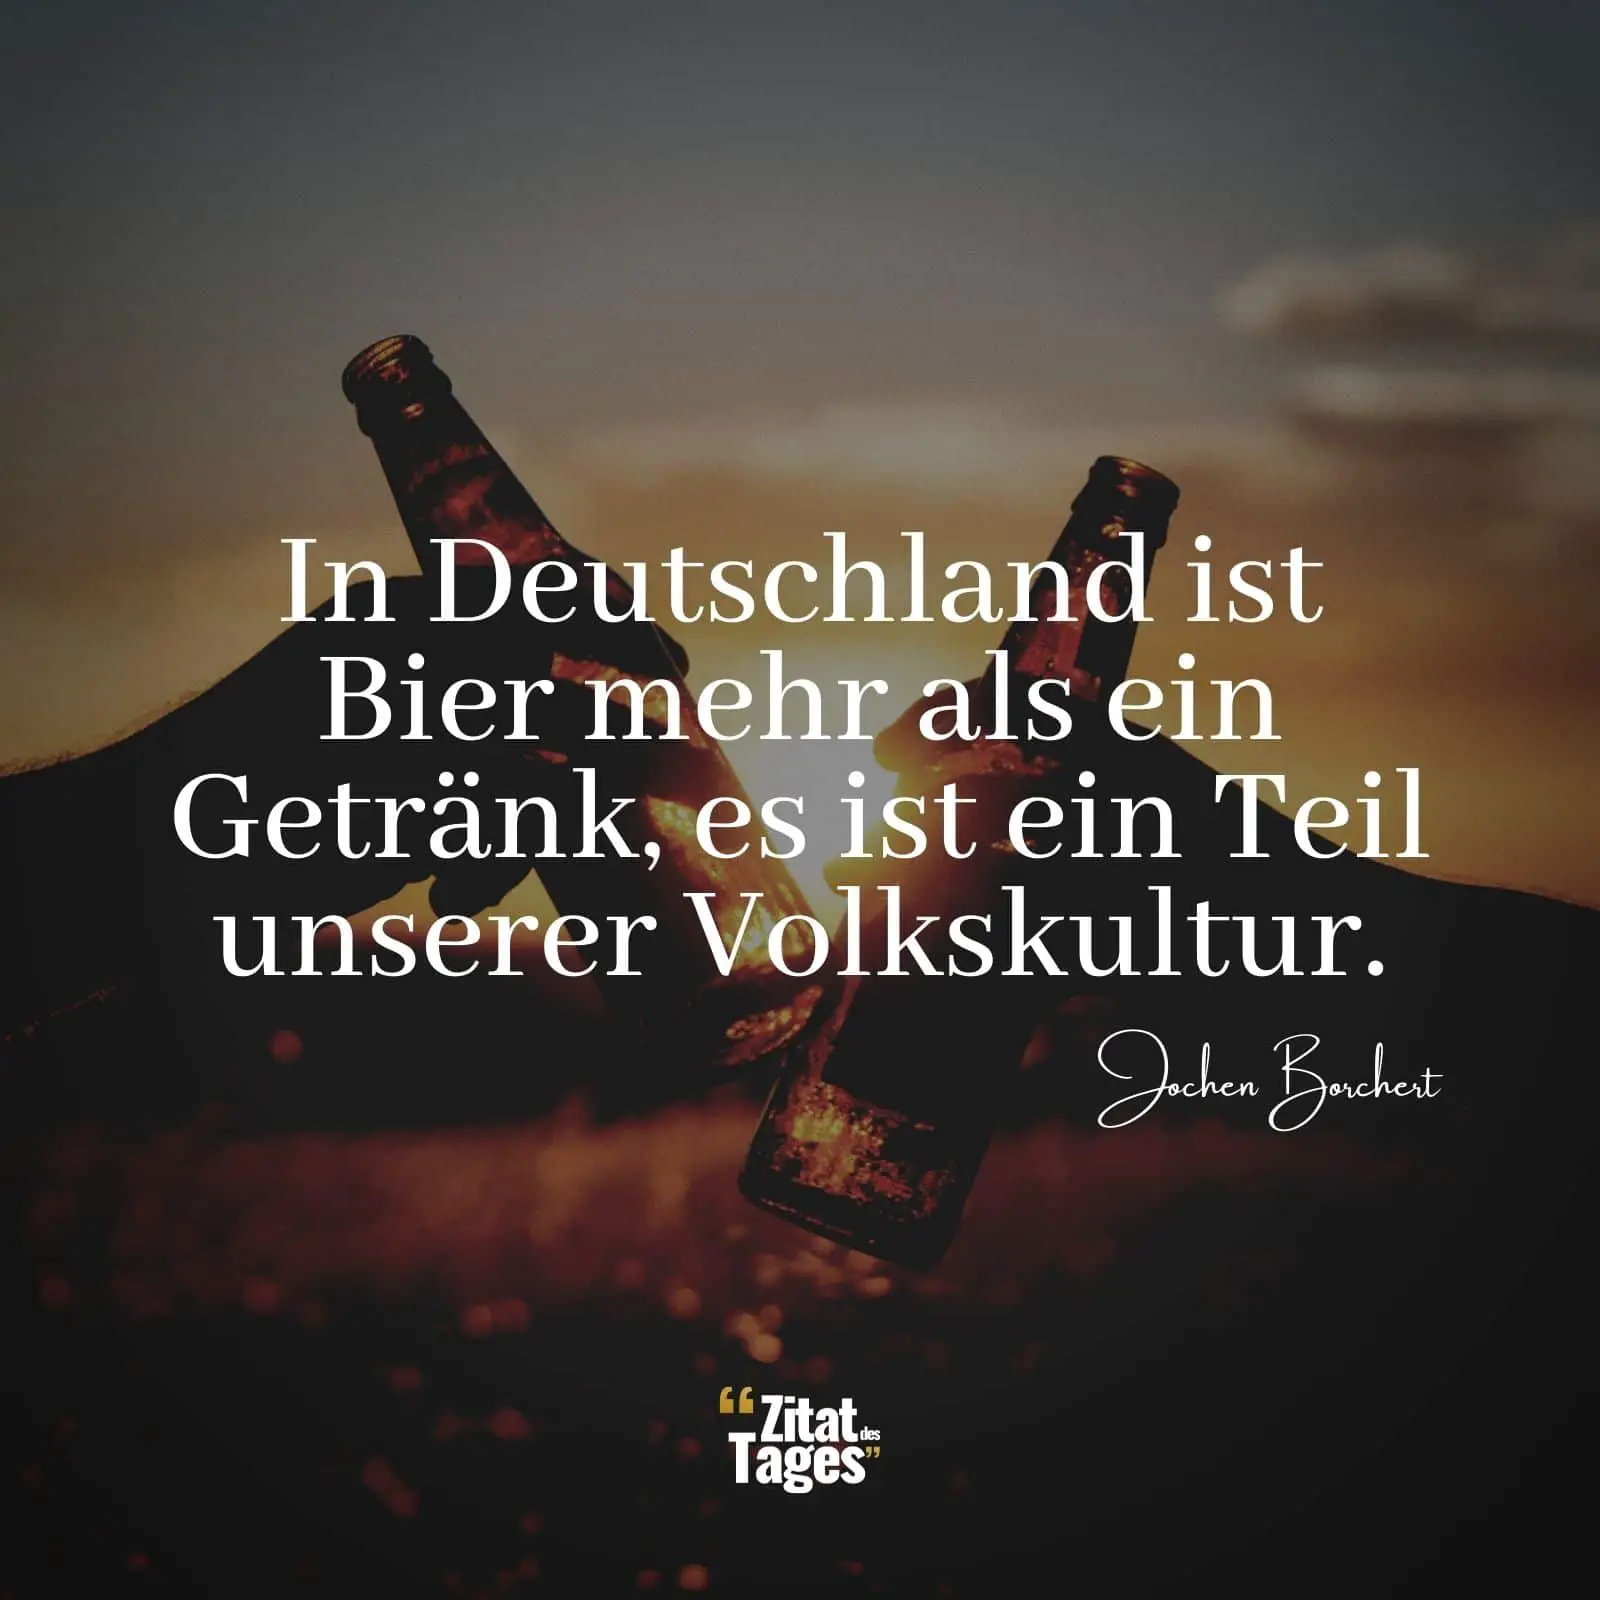 In Deutschland ist Bier mehr als ein Getränk, es ist ein Teil unserer Volkskultur. - Jochen Borchert